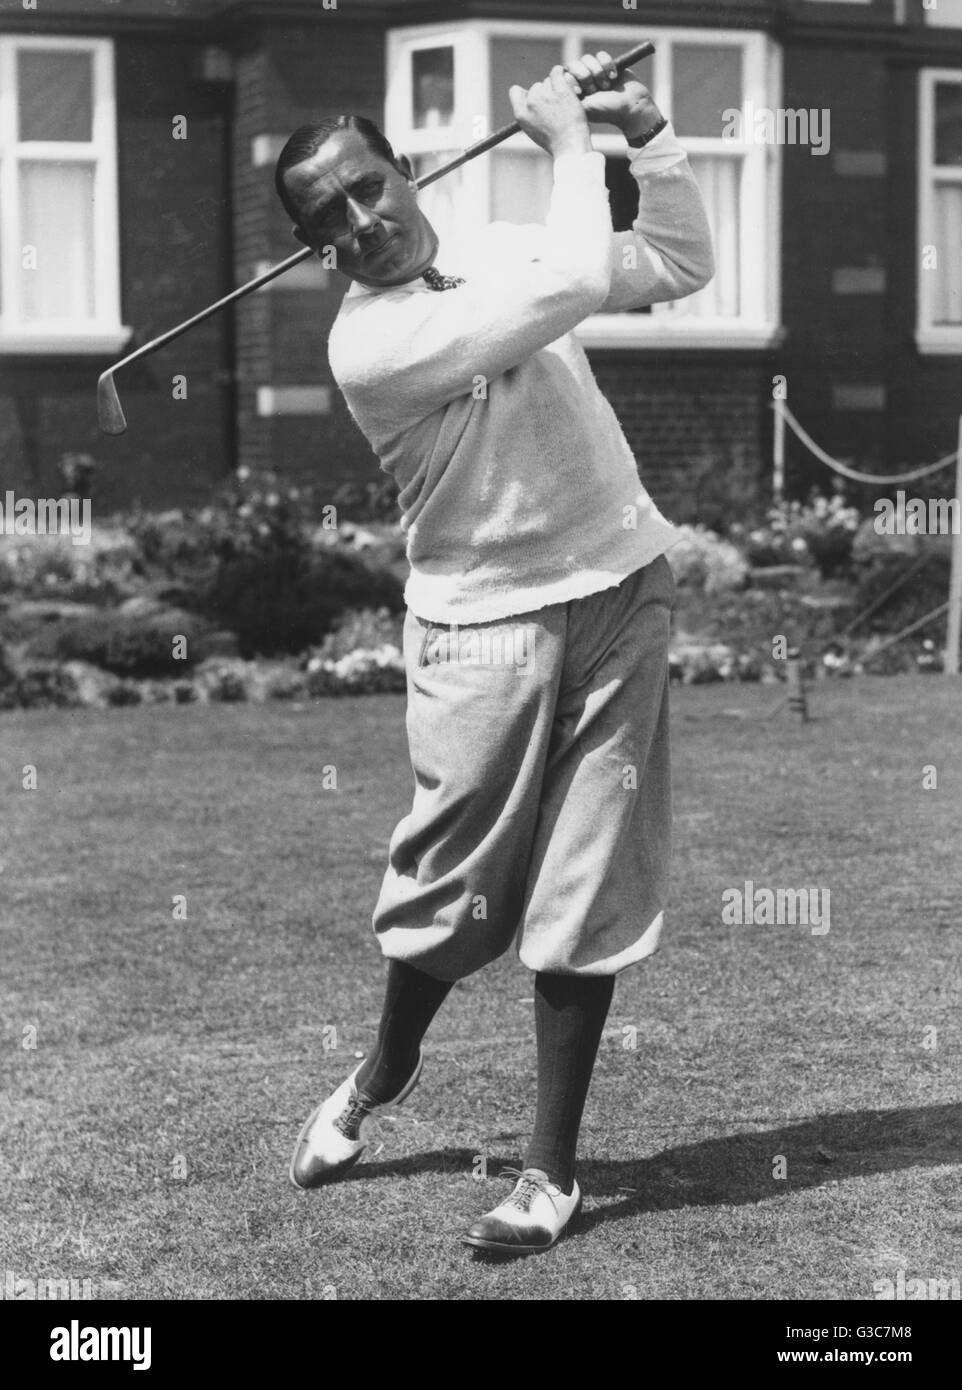 Charles Walter Hagen (1892-1969), golfeur professionnel américain, vu ici au Royal Lytham St Anne's golf course le 24 juin 1926. Date : 1926 Banque D'Images